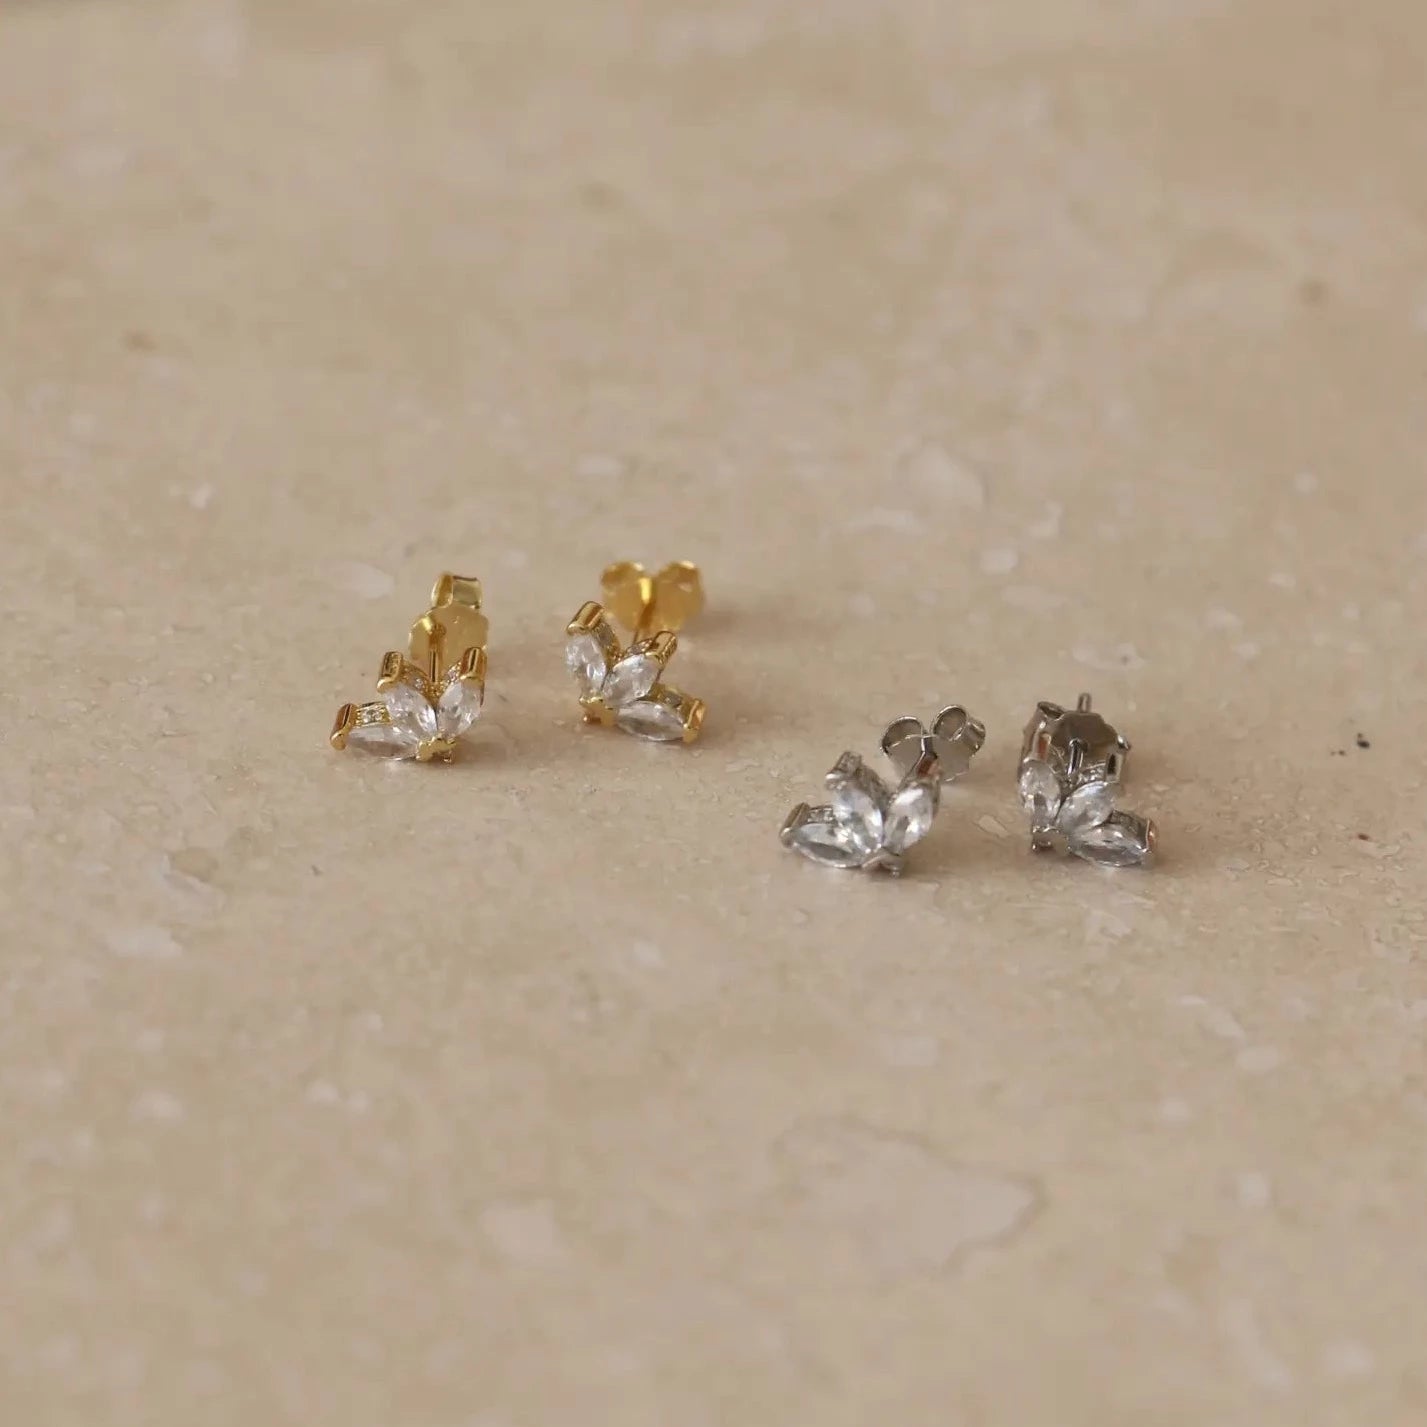 Mini Fan Stud Earrings - gold / silver